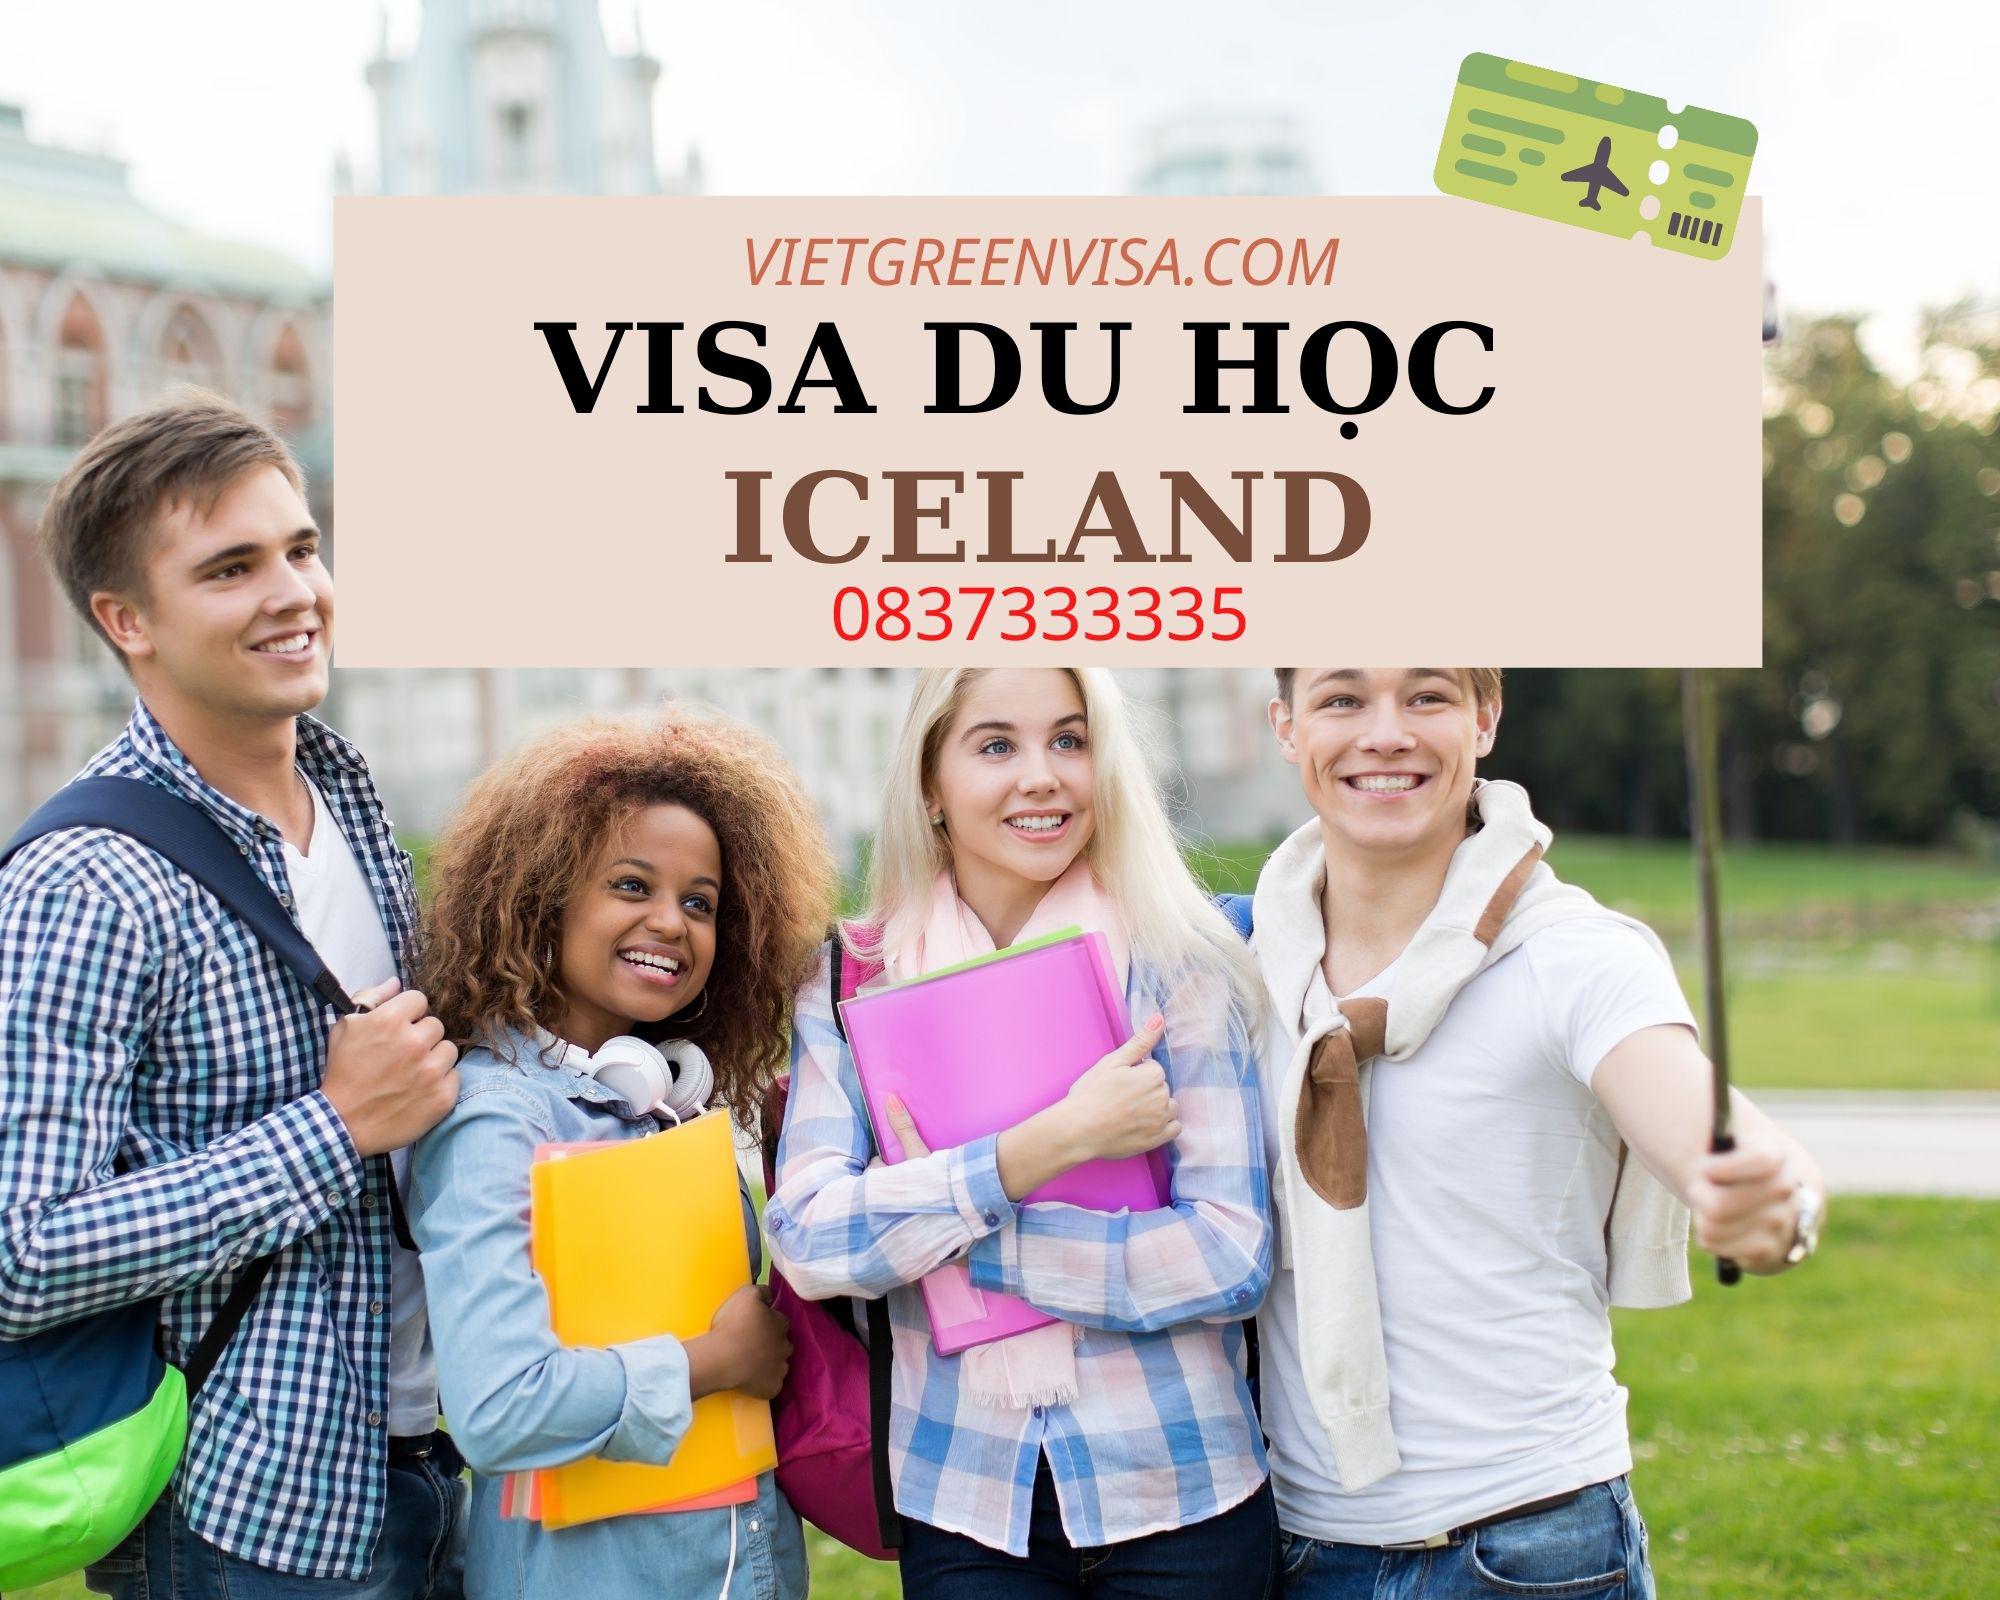 Tư vấn làm visa du học Iceland nhanh gọn | VietGreenVisa